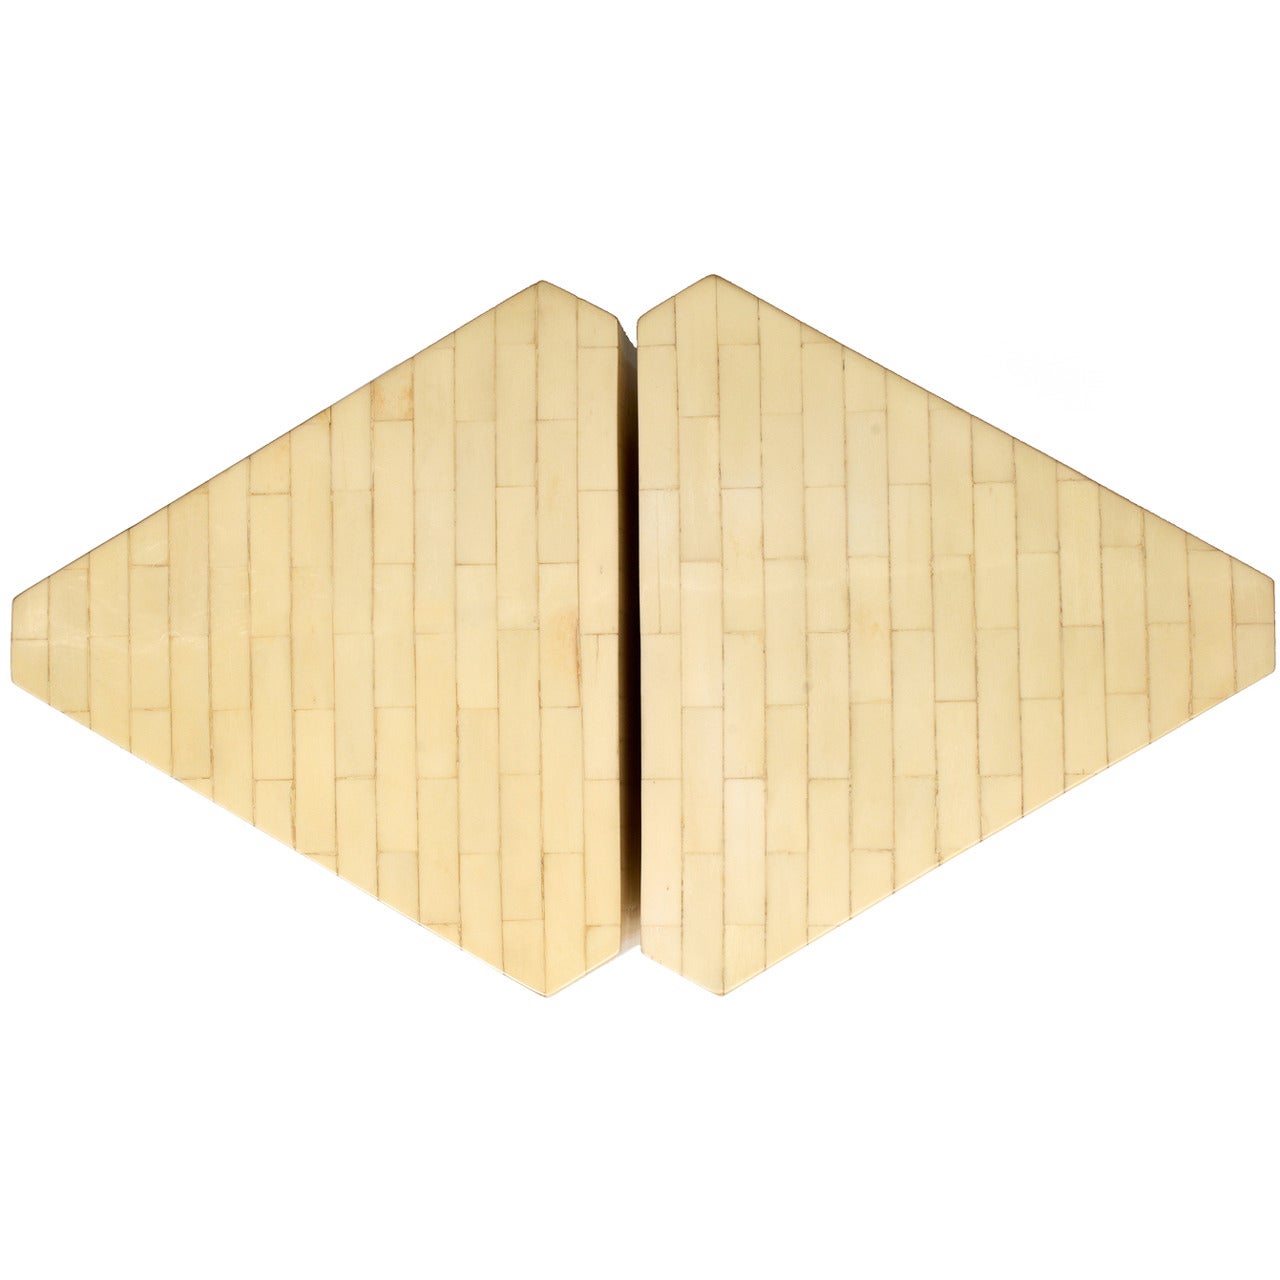 Pair of Bone Veneer Triangle Pedestals by Enrique Garces